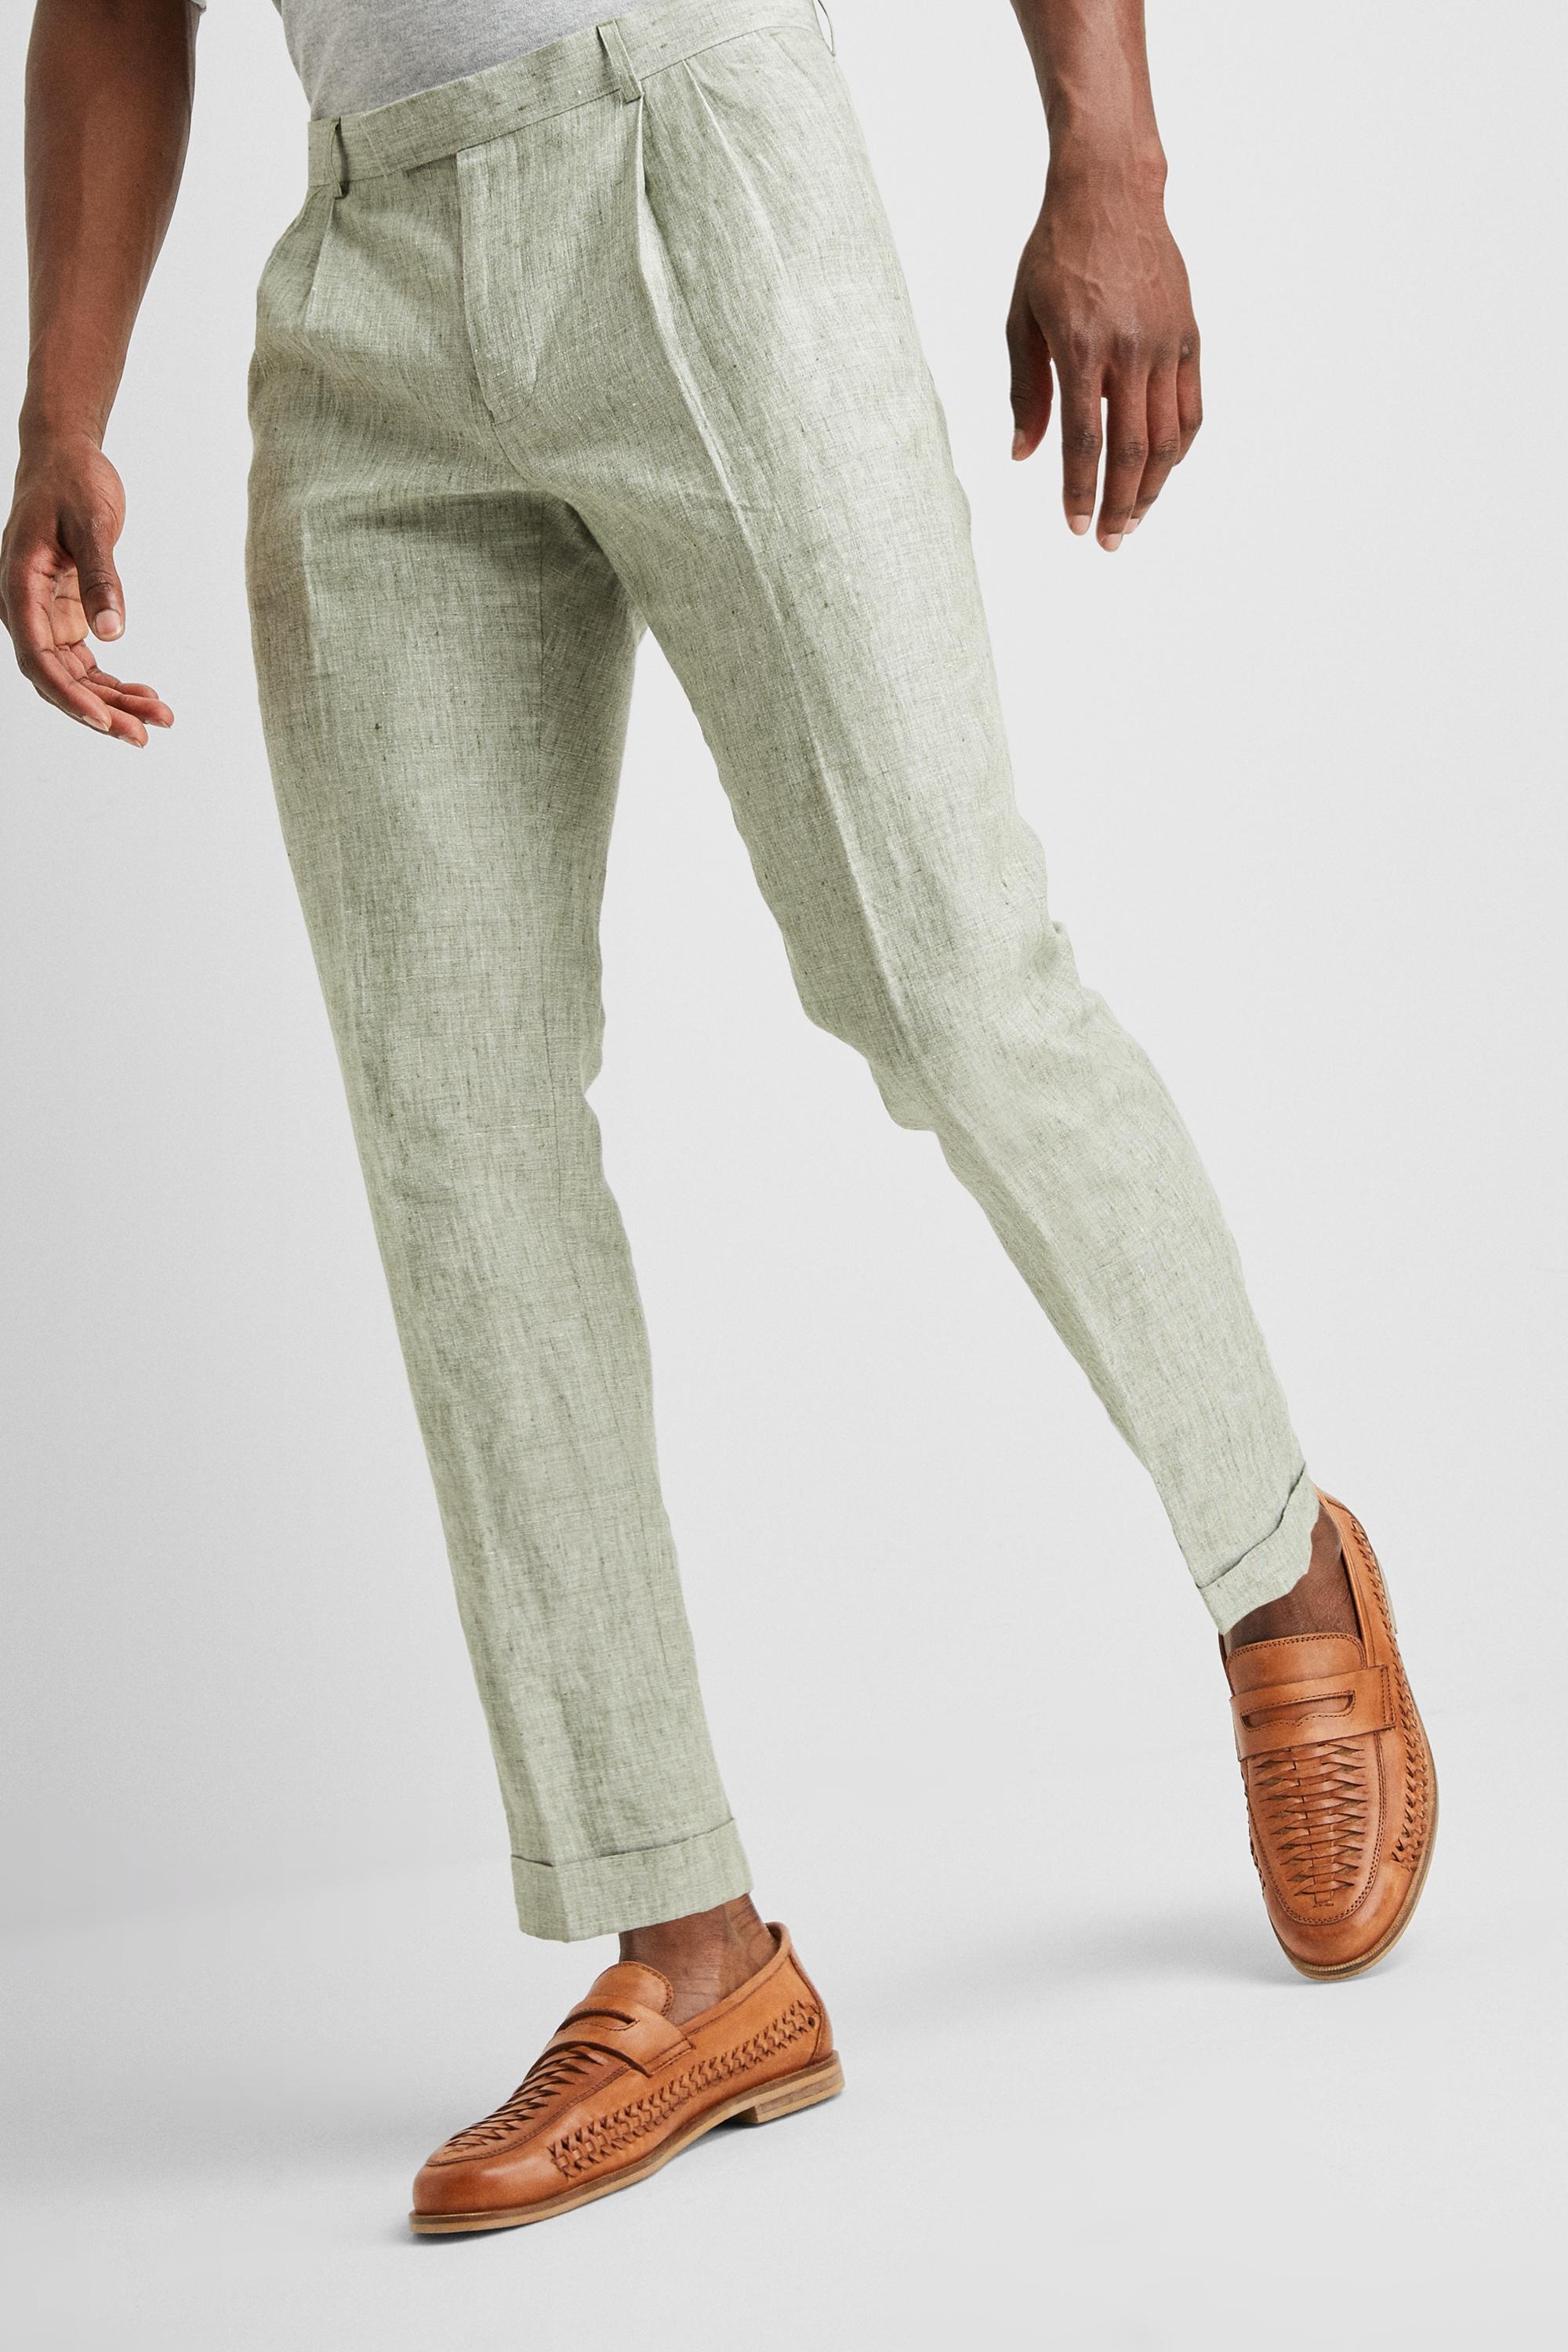 INC International Concepts Mens SlimFit Linen Blend Suit Pants  Created for Macys  Macys